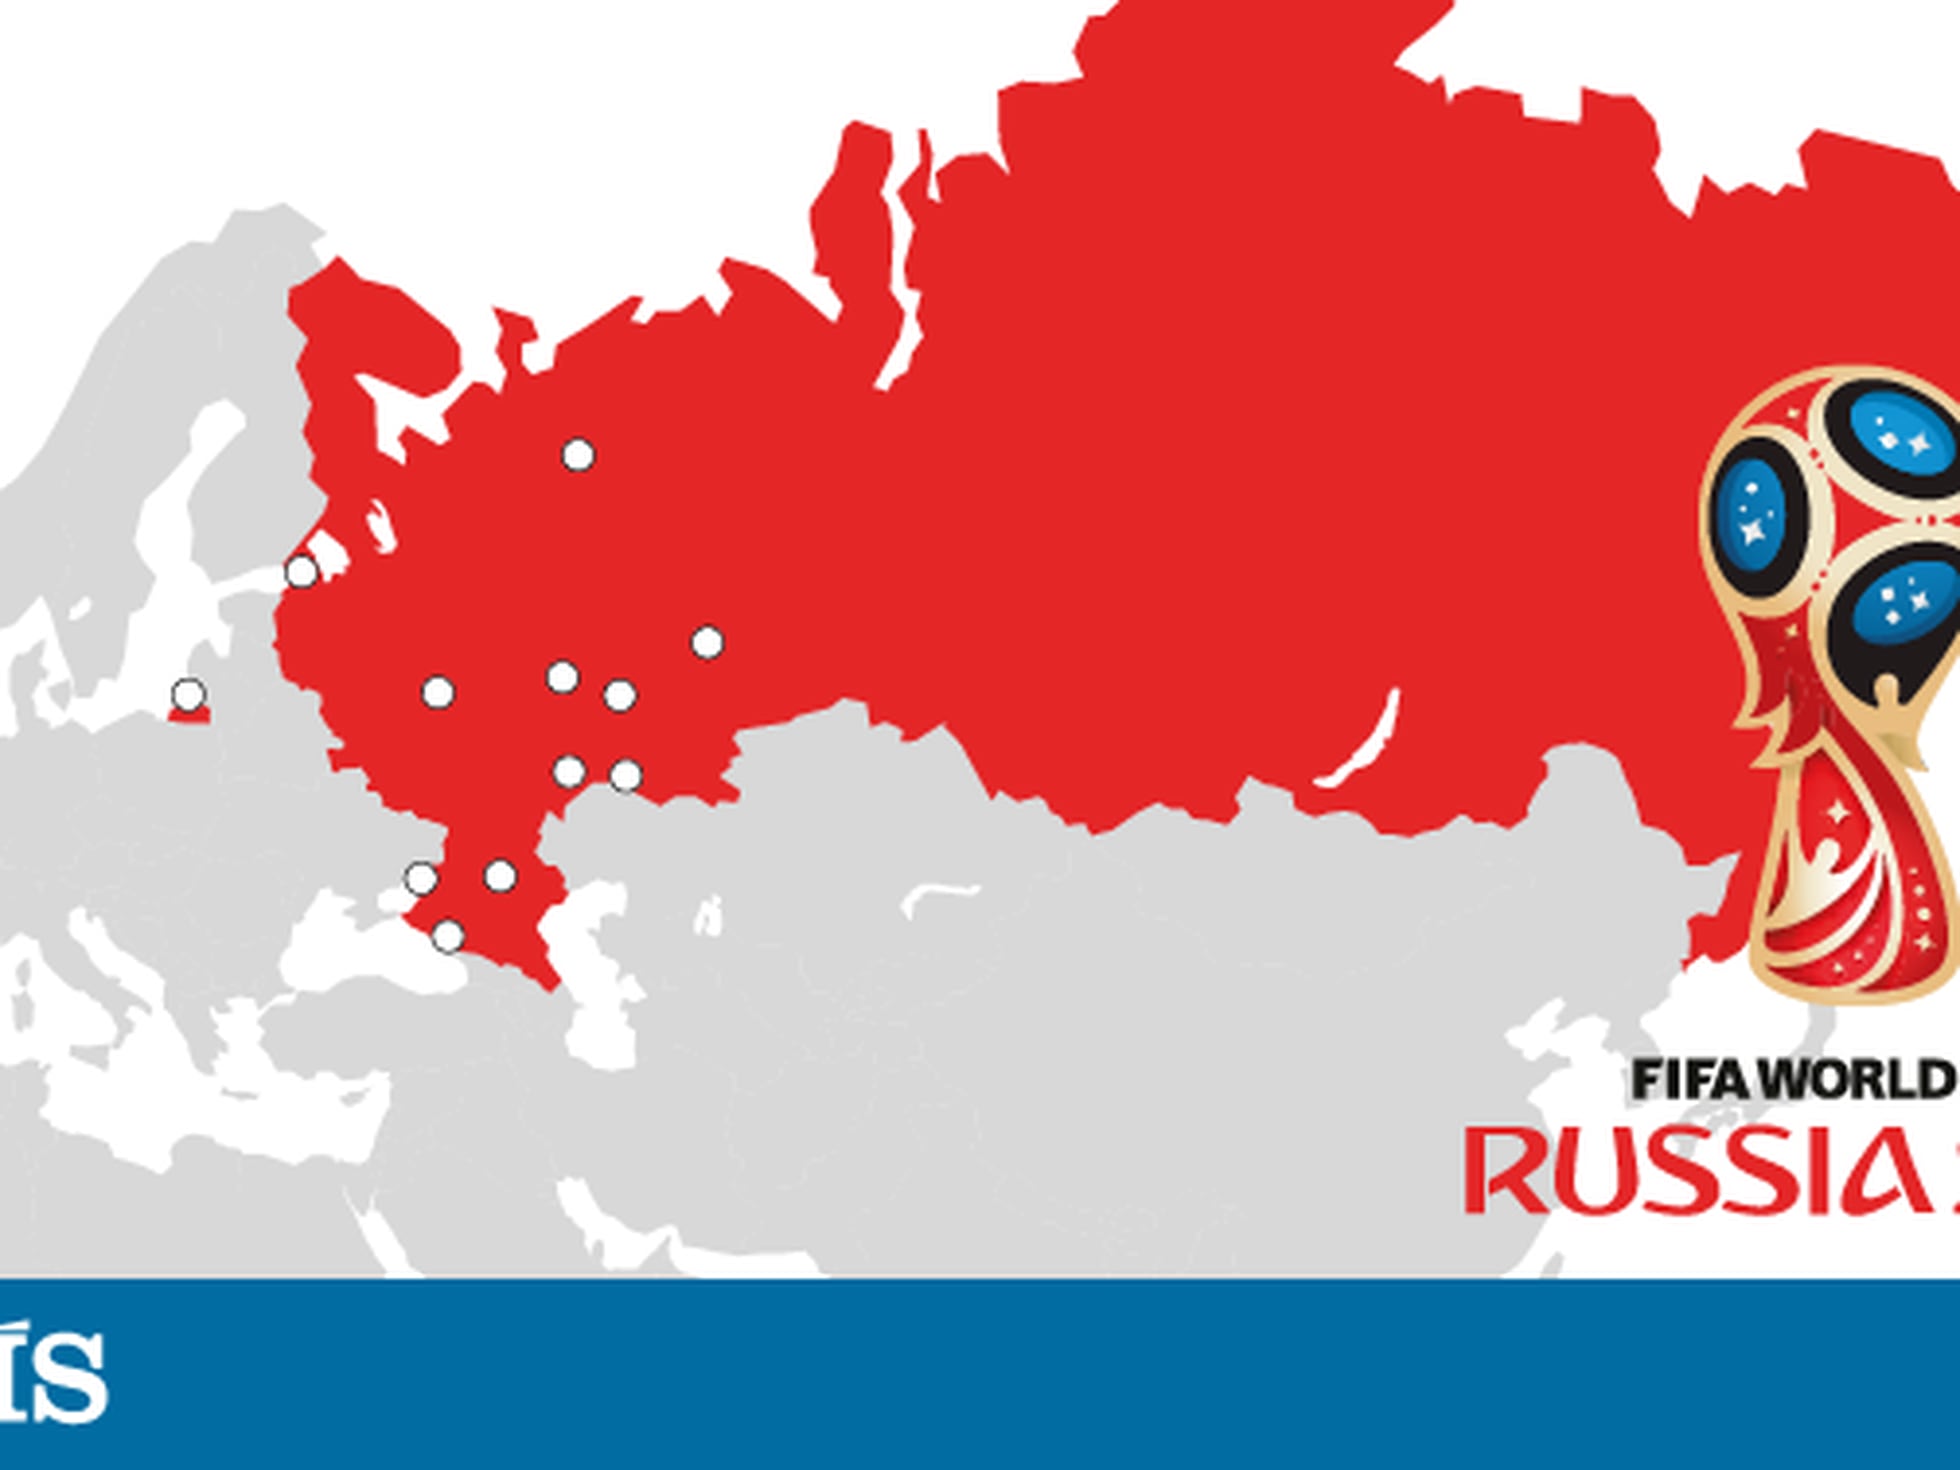 Folhapress - Artes - Copa do Mundo 2018 - Rússia - Tabela Fase de grupos